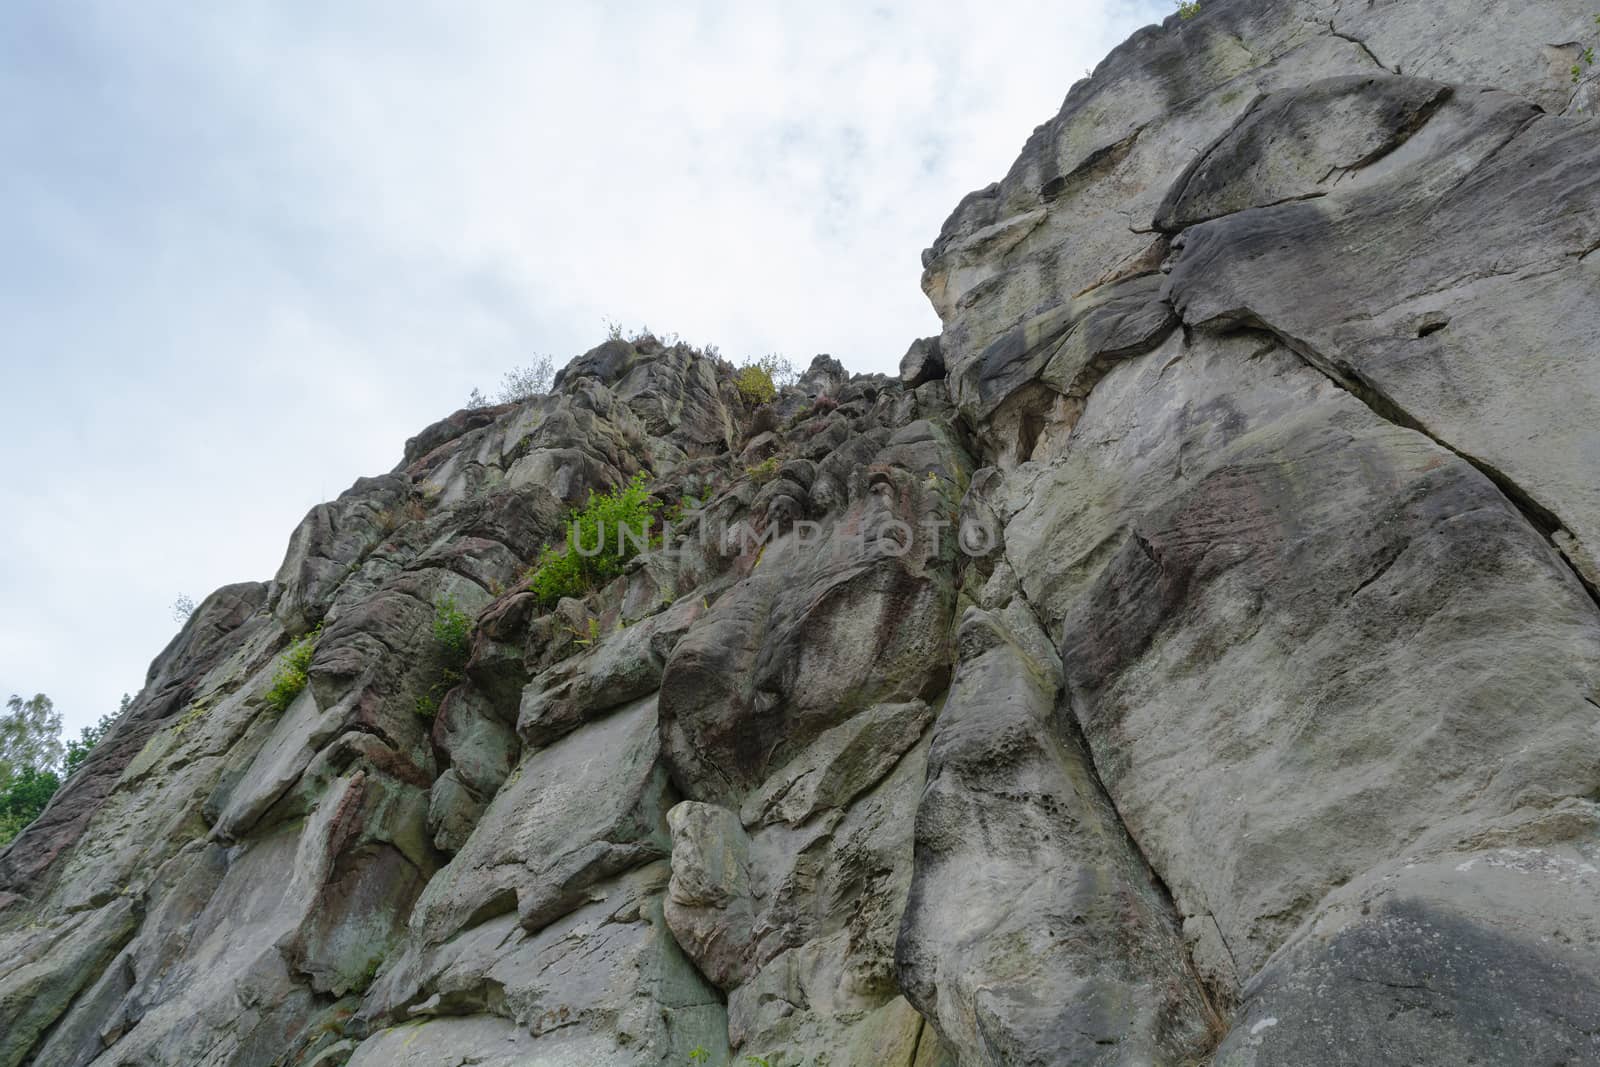 The Externsteine, striking sandstone rock formation in the Teuto by JFsPic